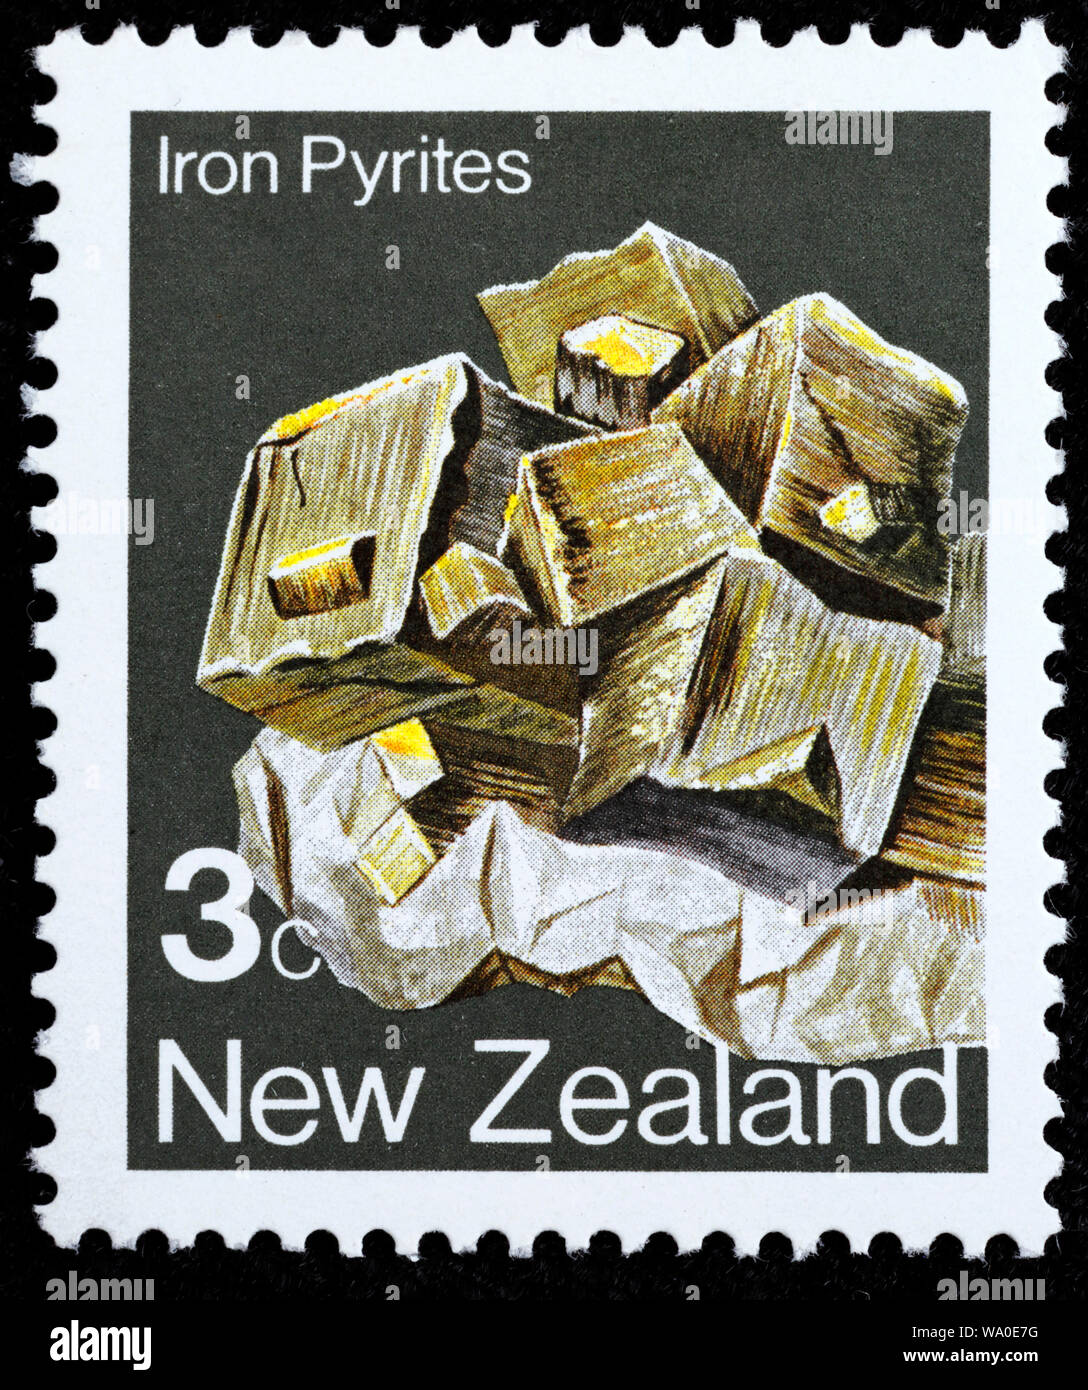 La pyrite de fer, minéral, timbre-poste, Nouvelle-Zélande, 1982 Banque D'Images